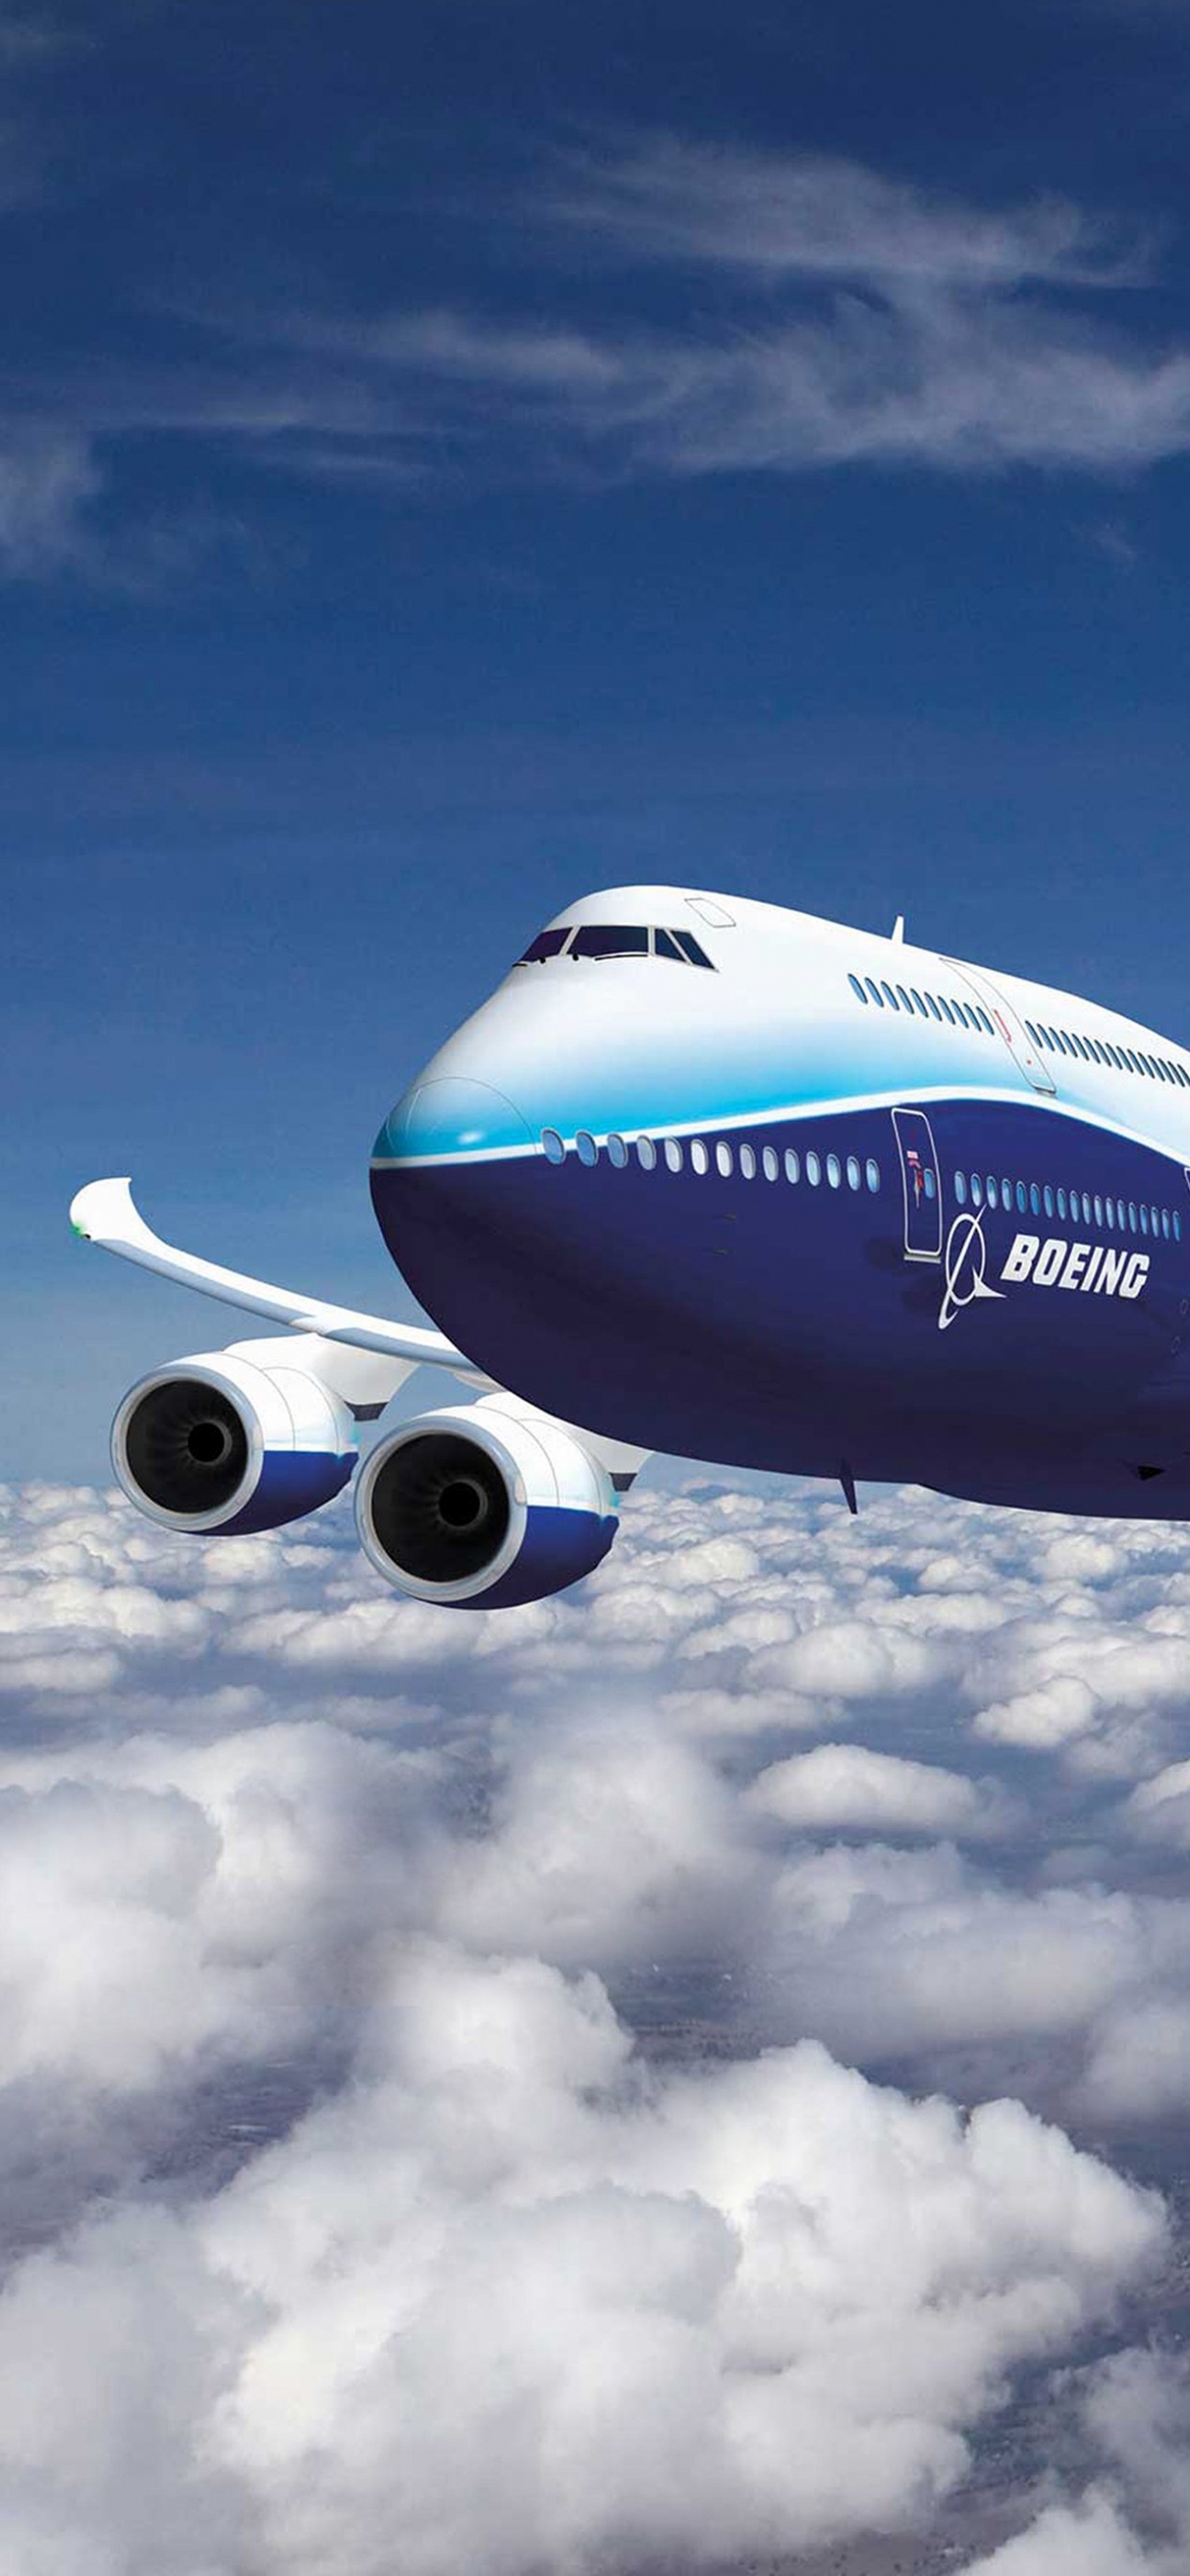 Boeing 747 8 HD wallpapers | Pxfuel